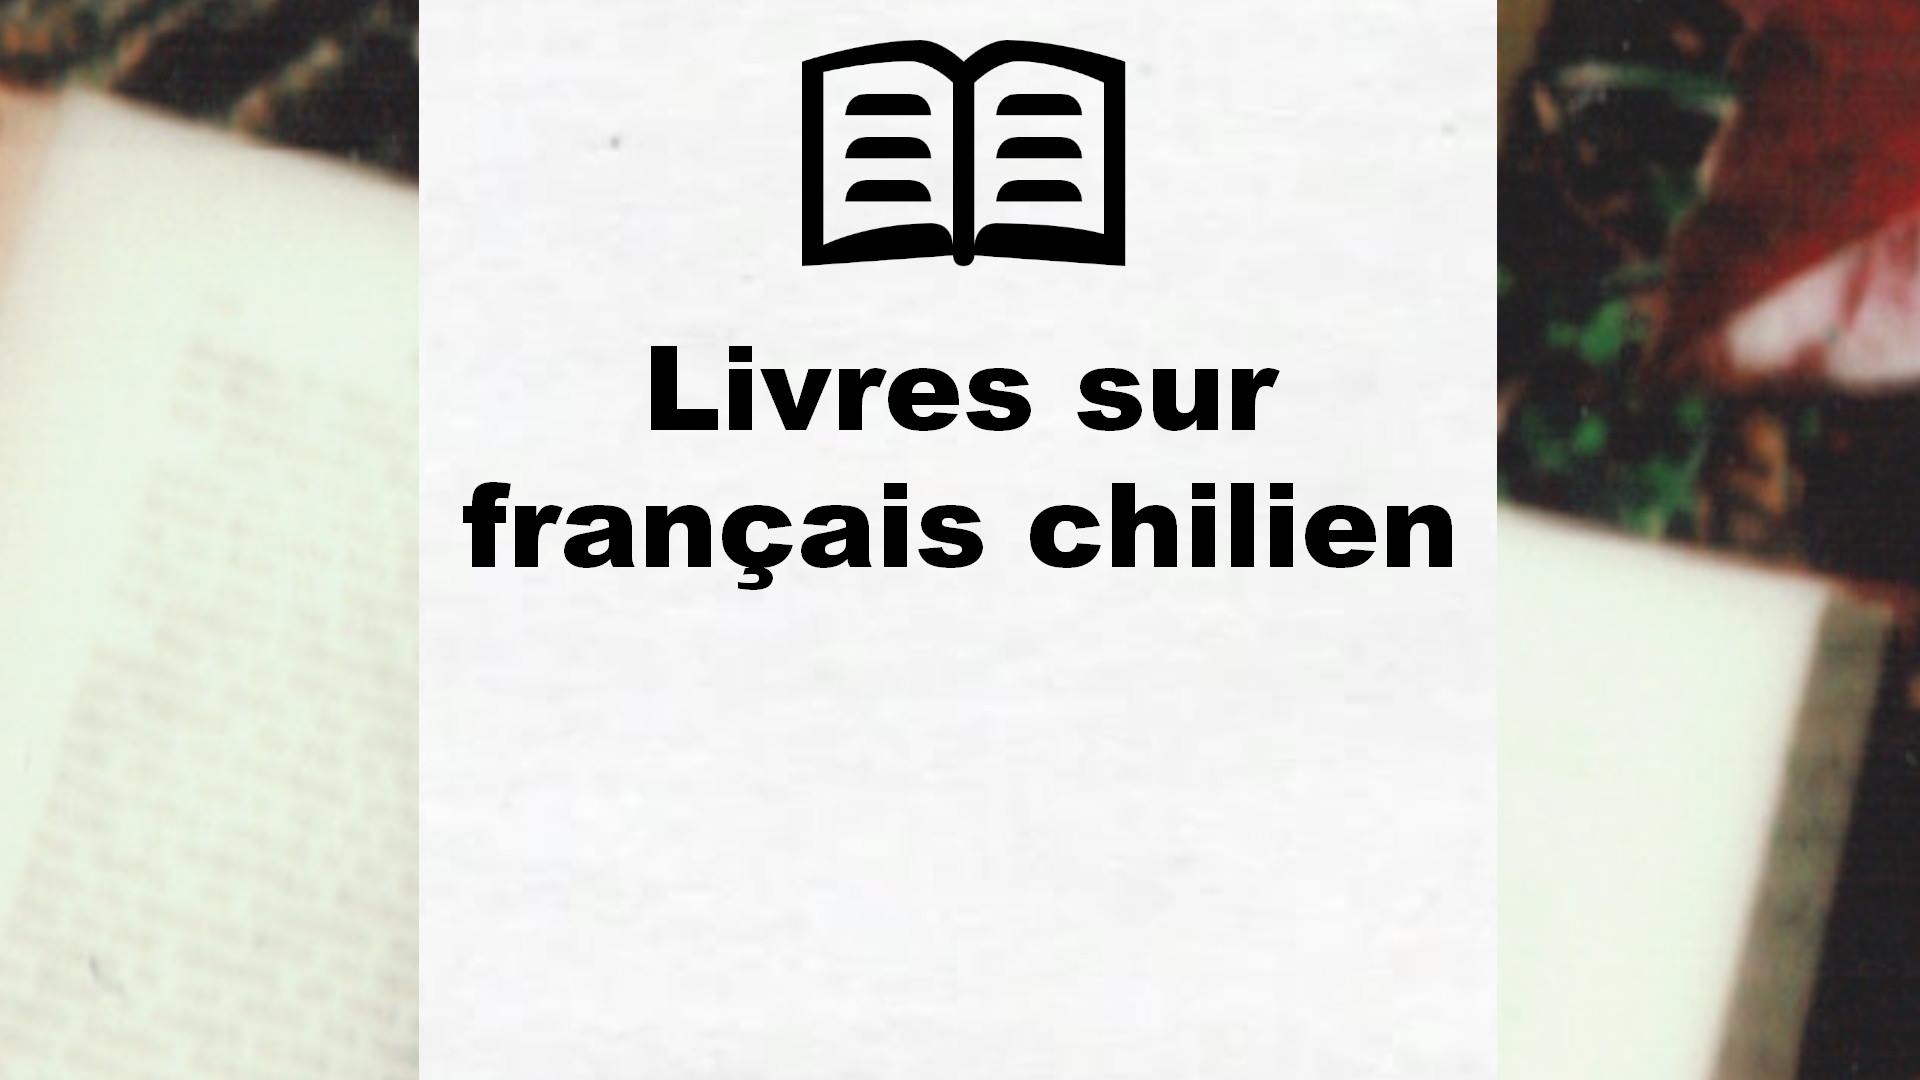 Livres sur français chilien